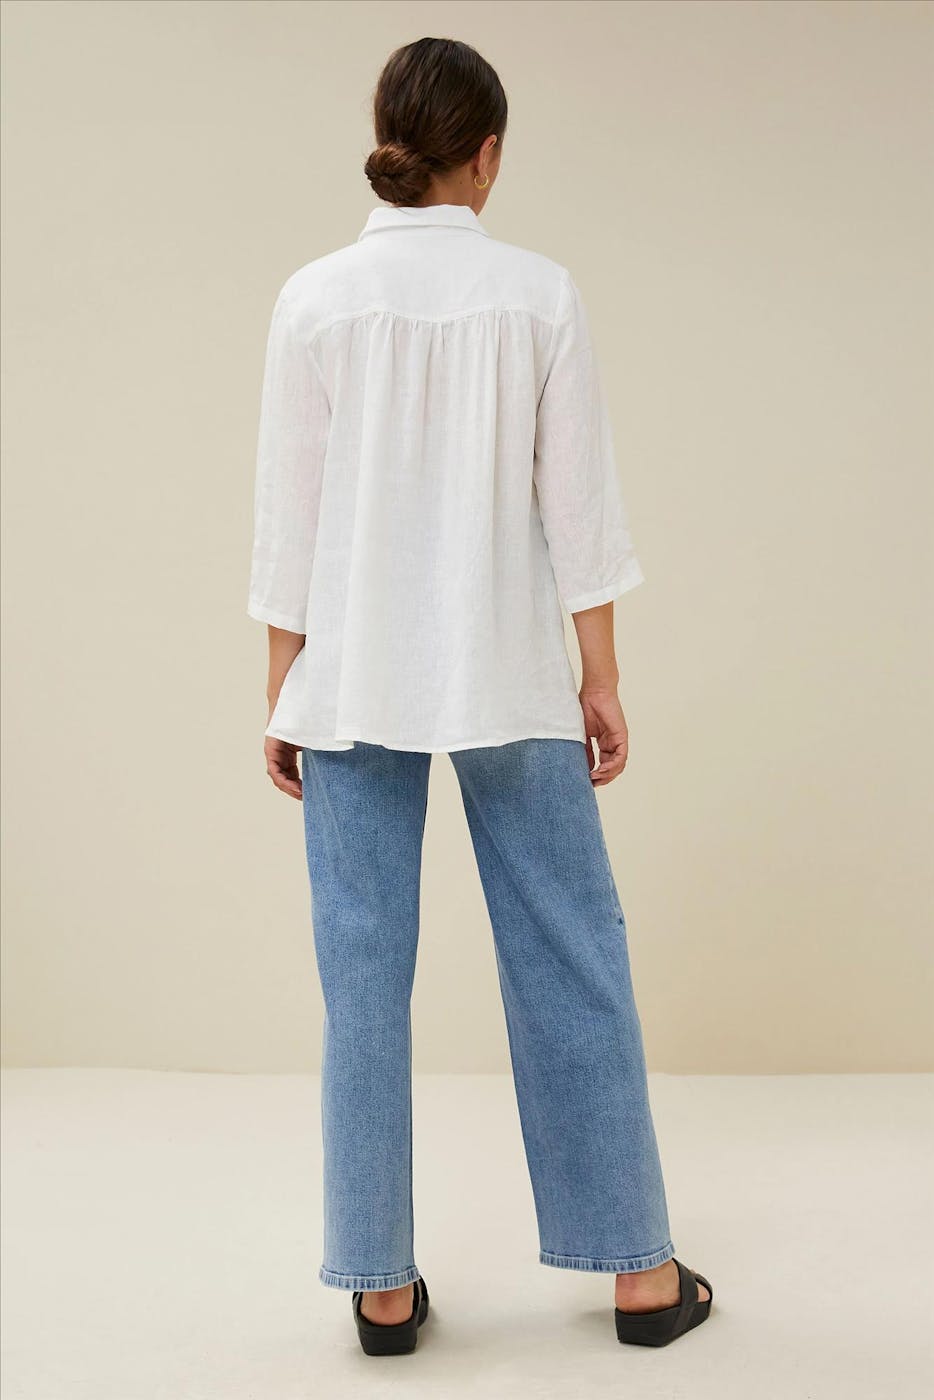 BY BAR - Witte Irene Linen blouse